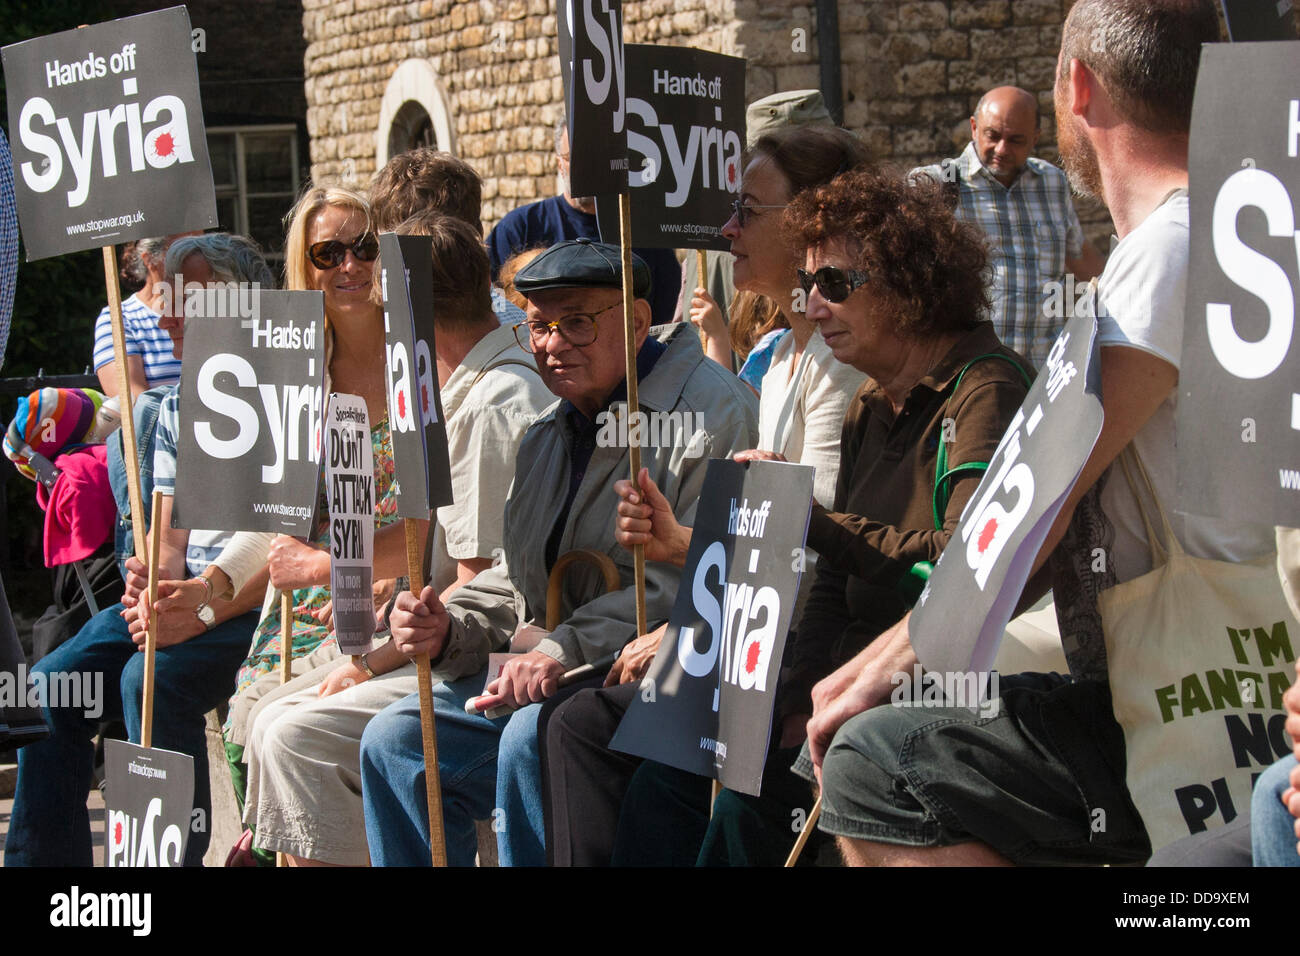 Londres, Royaume-Uni. Août 29, 2013. Un petit groupe de militants contre la guerre manifester contre l'intervention militaire en Syrie alors que les députés discutent des options dans le Parlement. Crédit : Paul Davey/Alamy Live News Banque D'Images